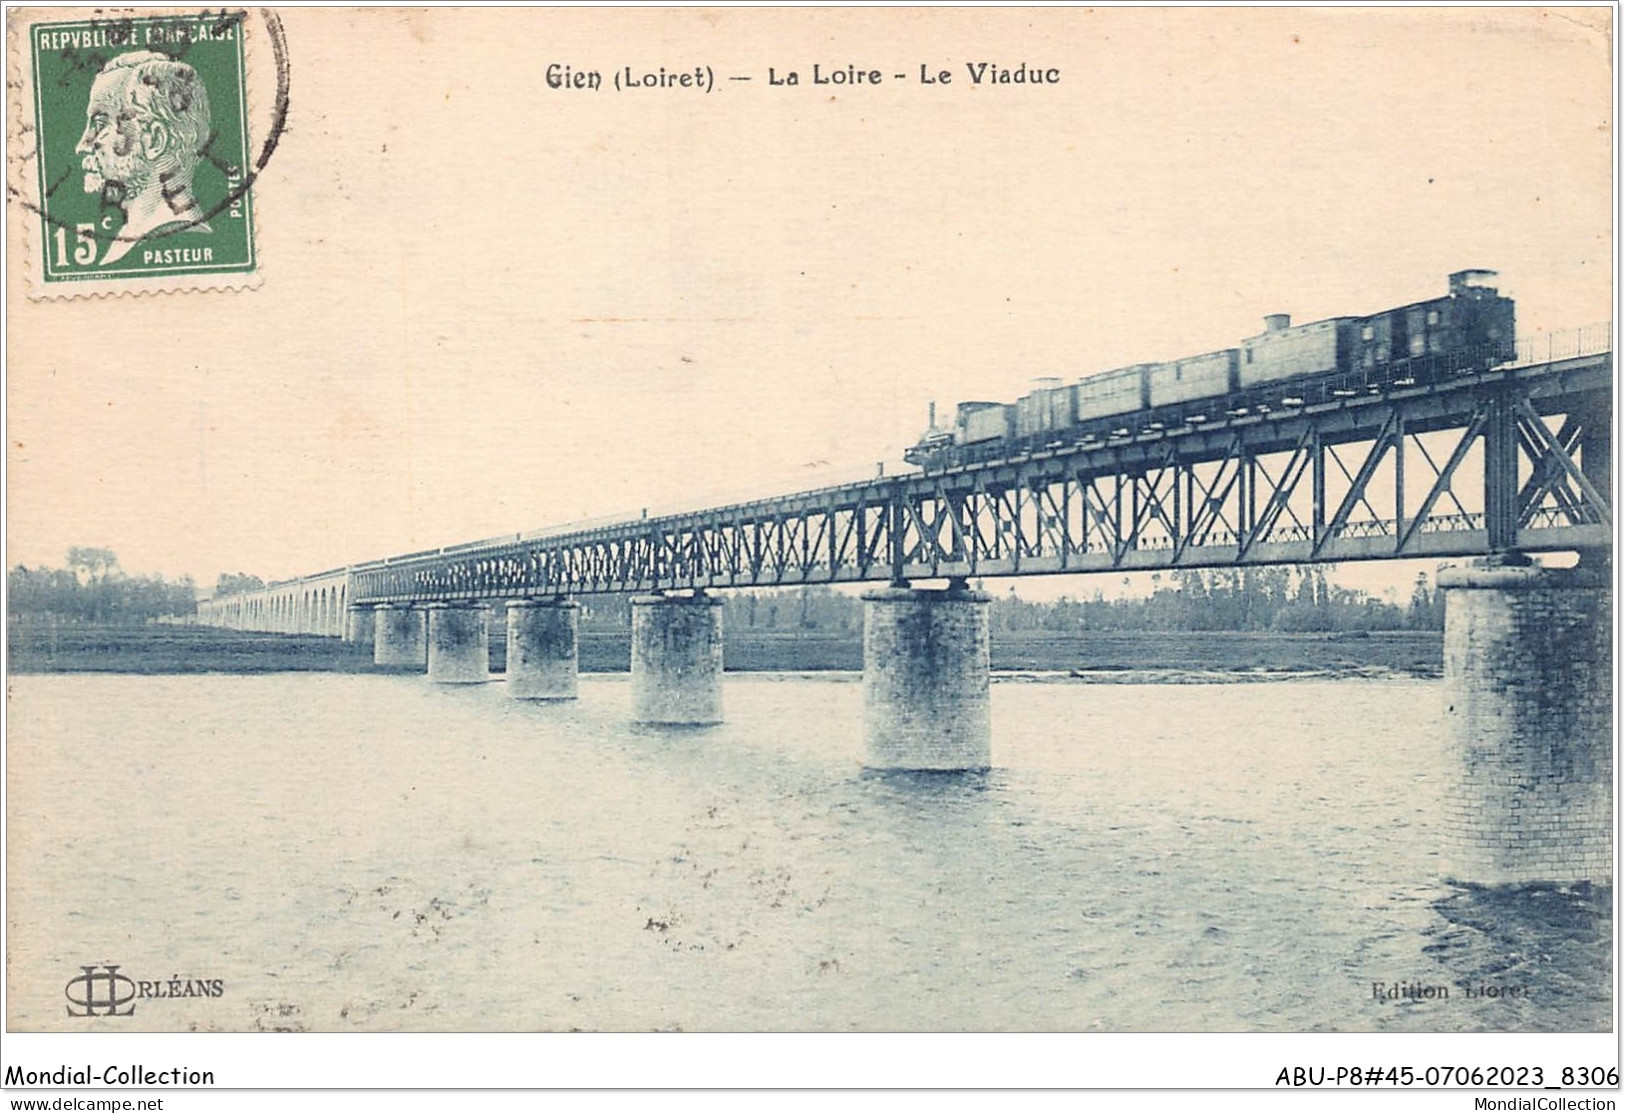 ABUP8-45-0789 - GIEN - La Loire - Le Viaduc TRAIN - Gien